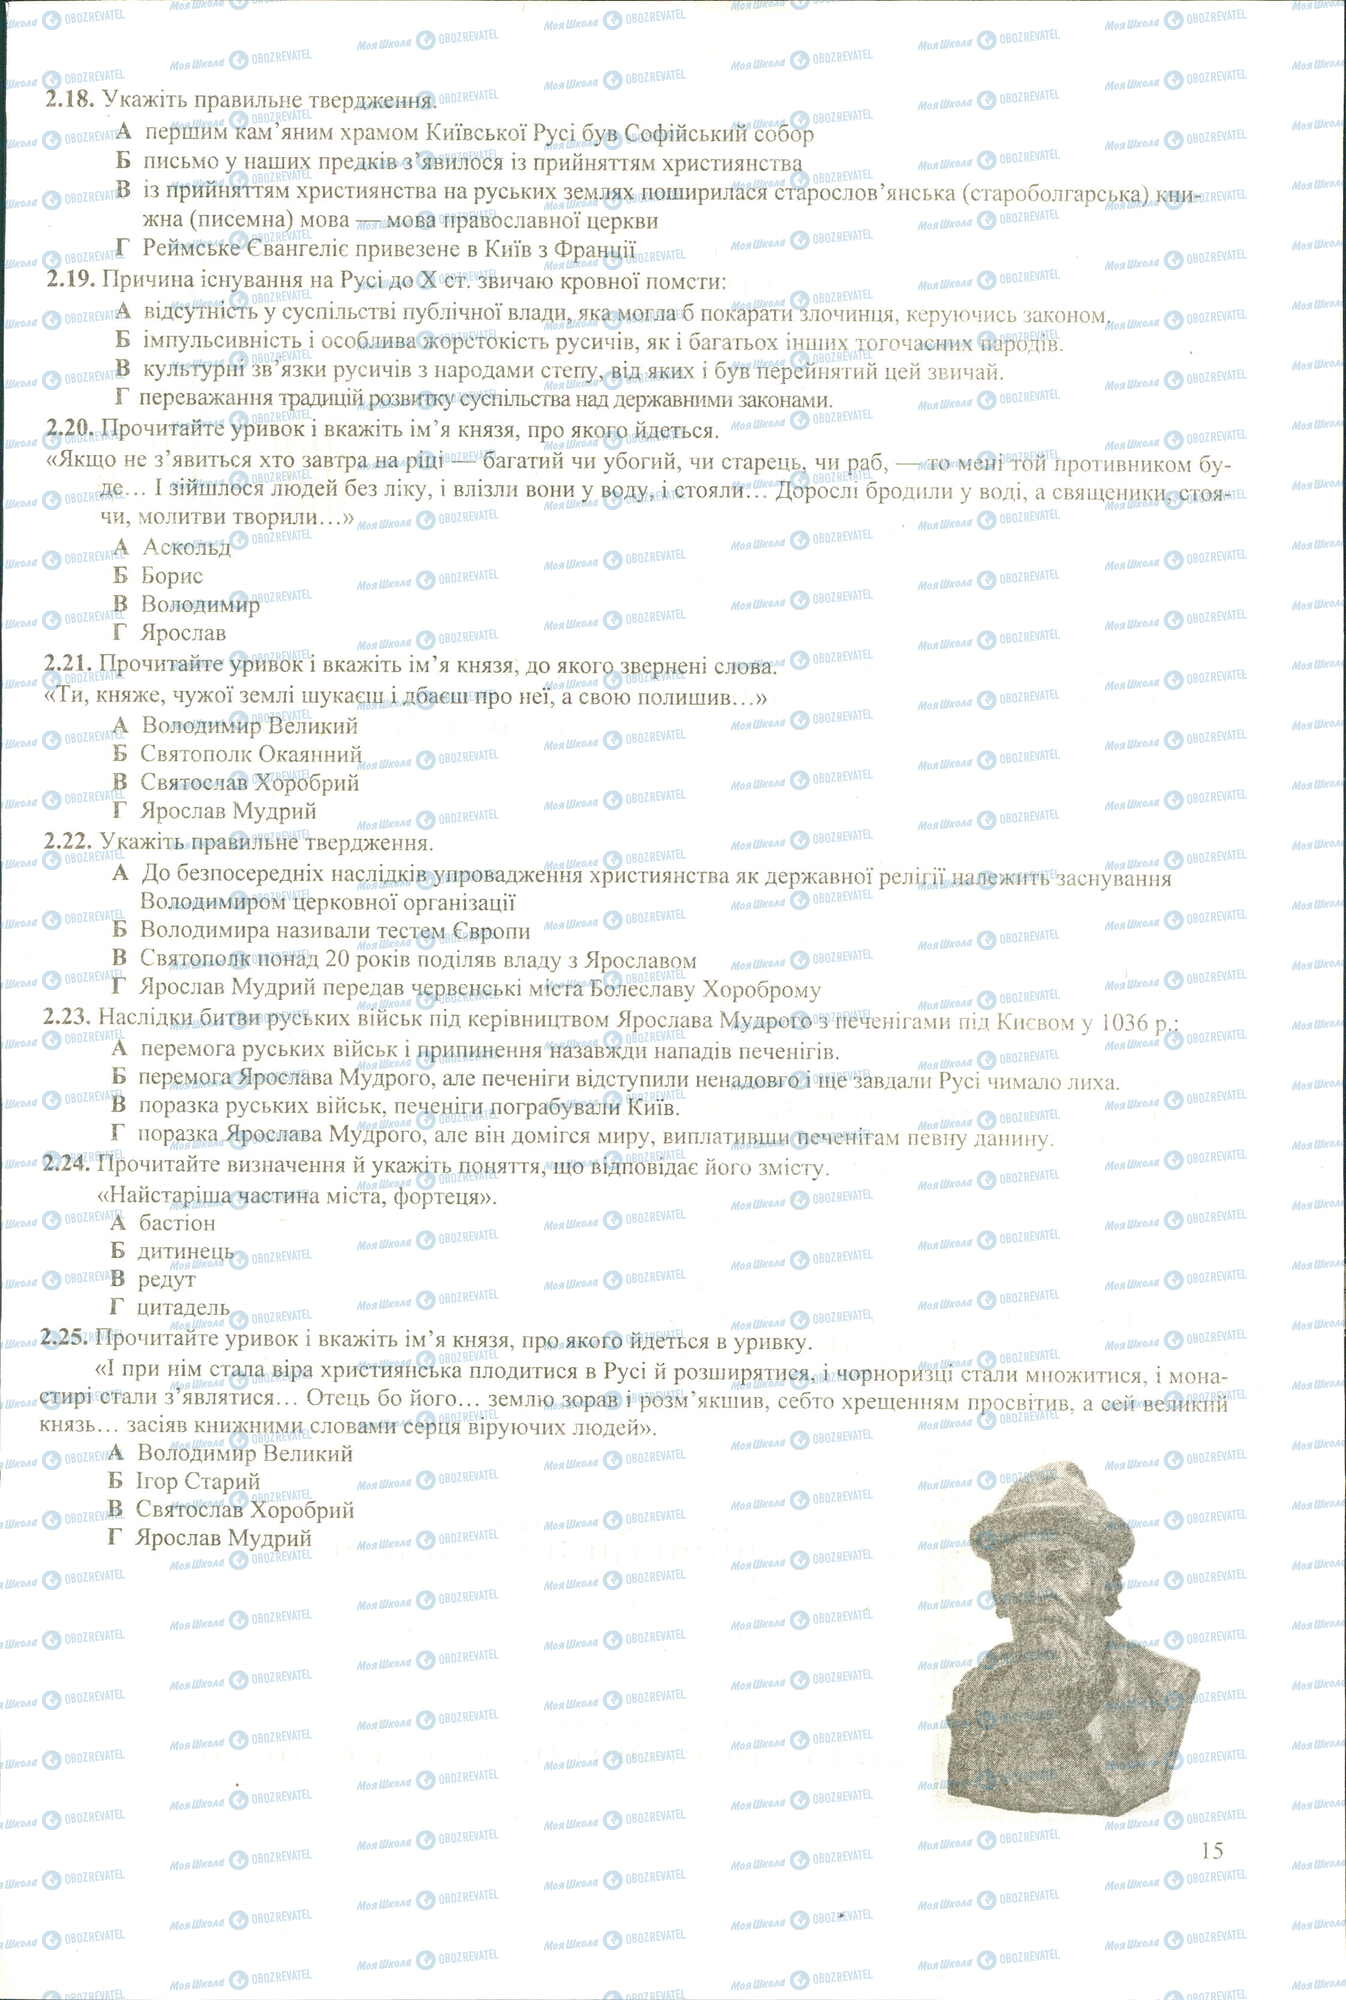 ЗНО История Украины 11 класс страница 2.18-2.25